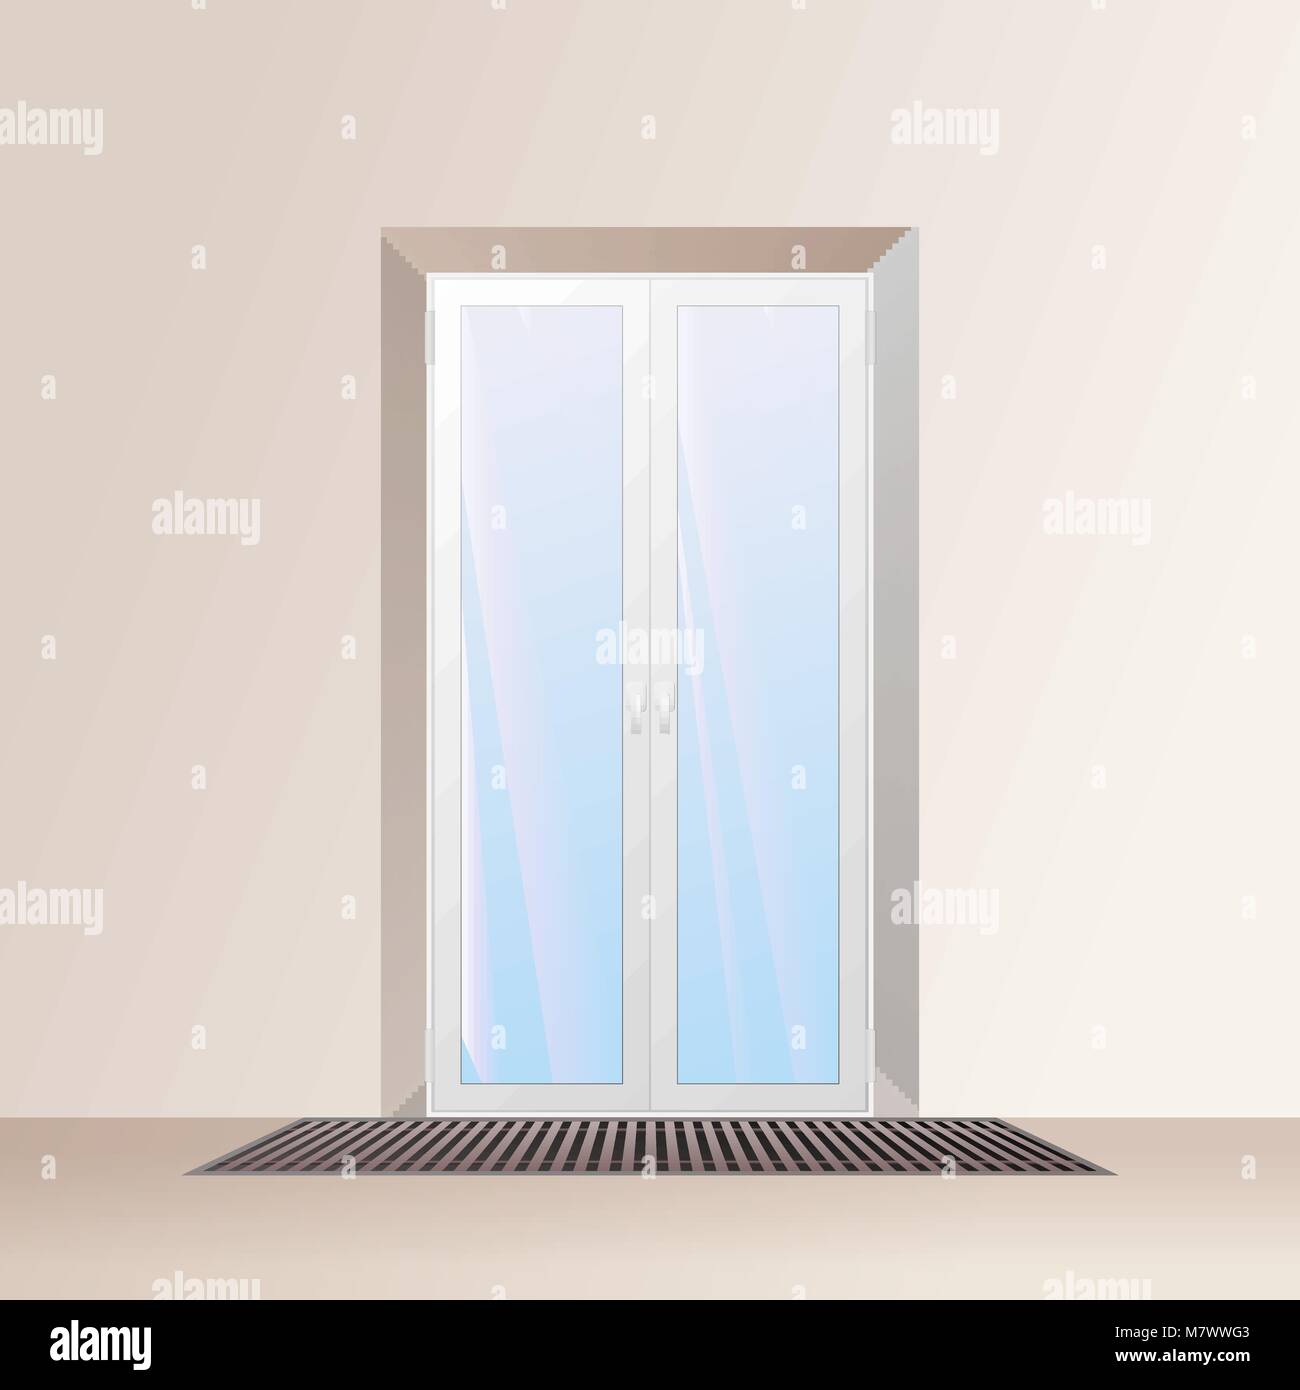 Unterflur Konvektor Unter Dem Fenster Heizung System Vector Illustration Stock Vektorgrafik Alamy